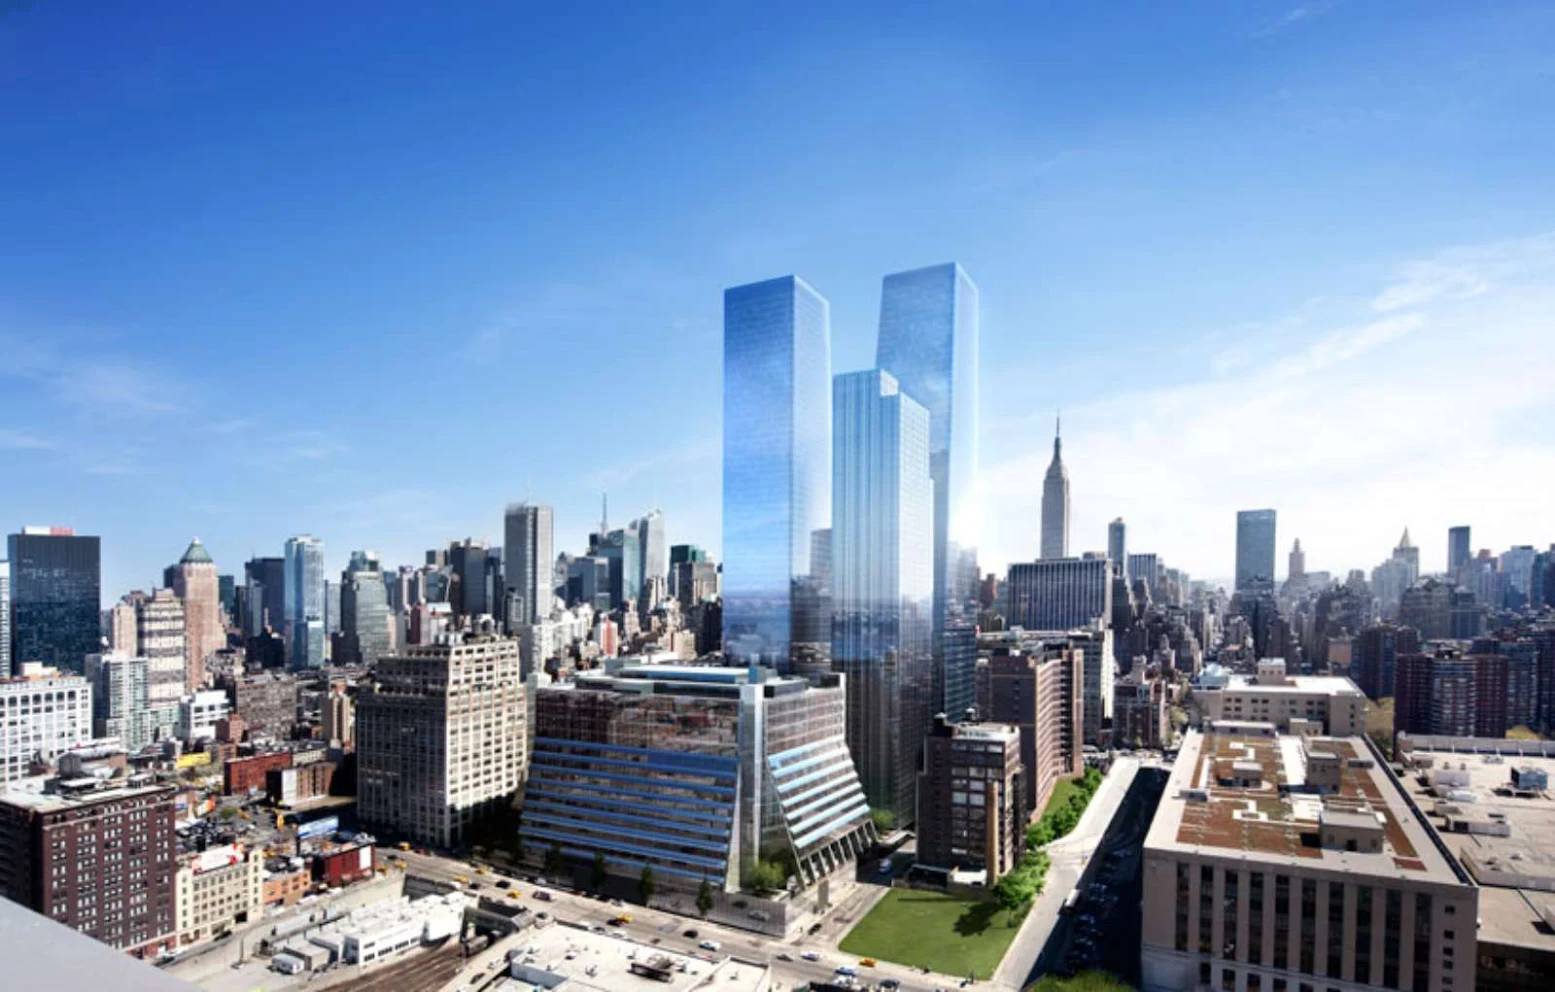 Redevelopment of Five Manhattan West by REX